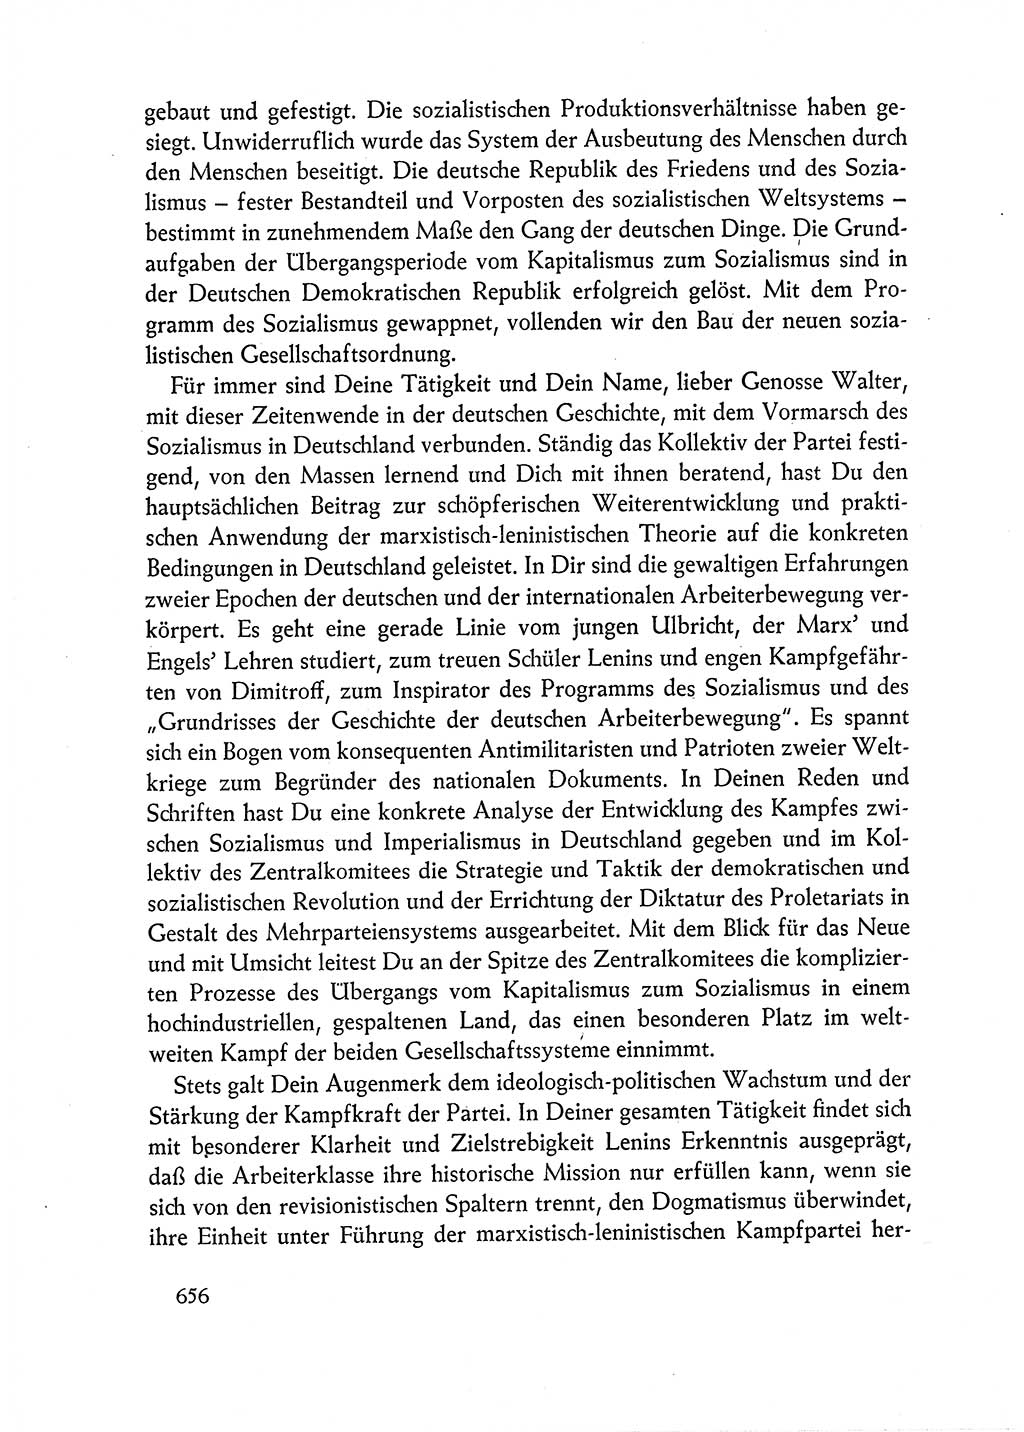 Dokumente der Sozialistischen Einheitspartei Deutschlands (SED) [Deutsche Demokratische Republik (DDR)] 1962-1963, Seite 656 (Dok. SED DDR 1962-1963, S. 656)